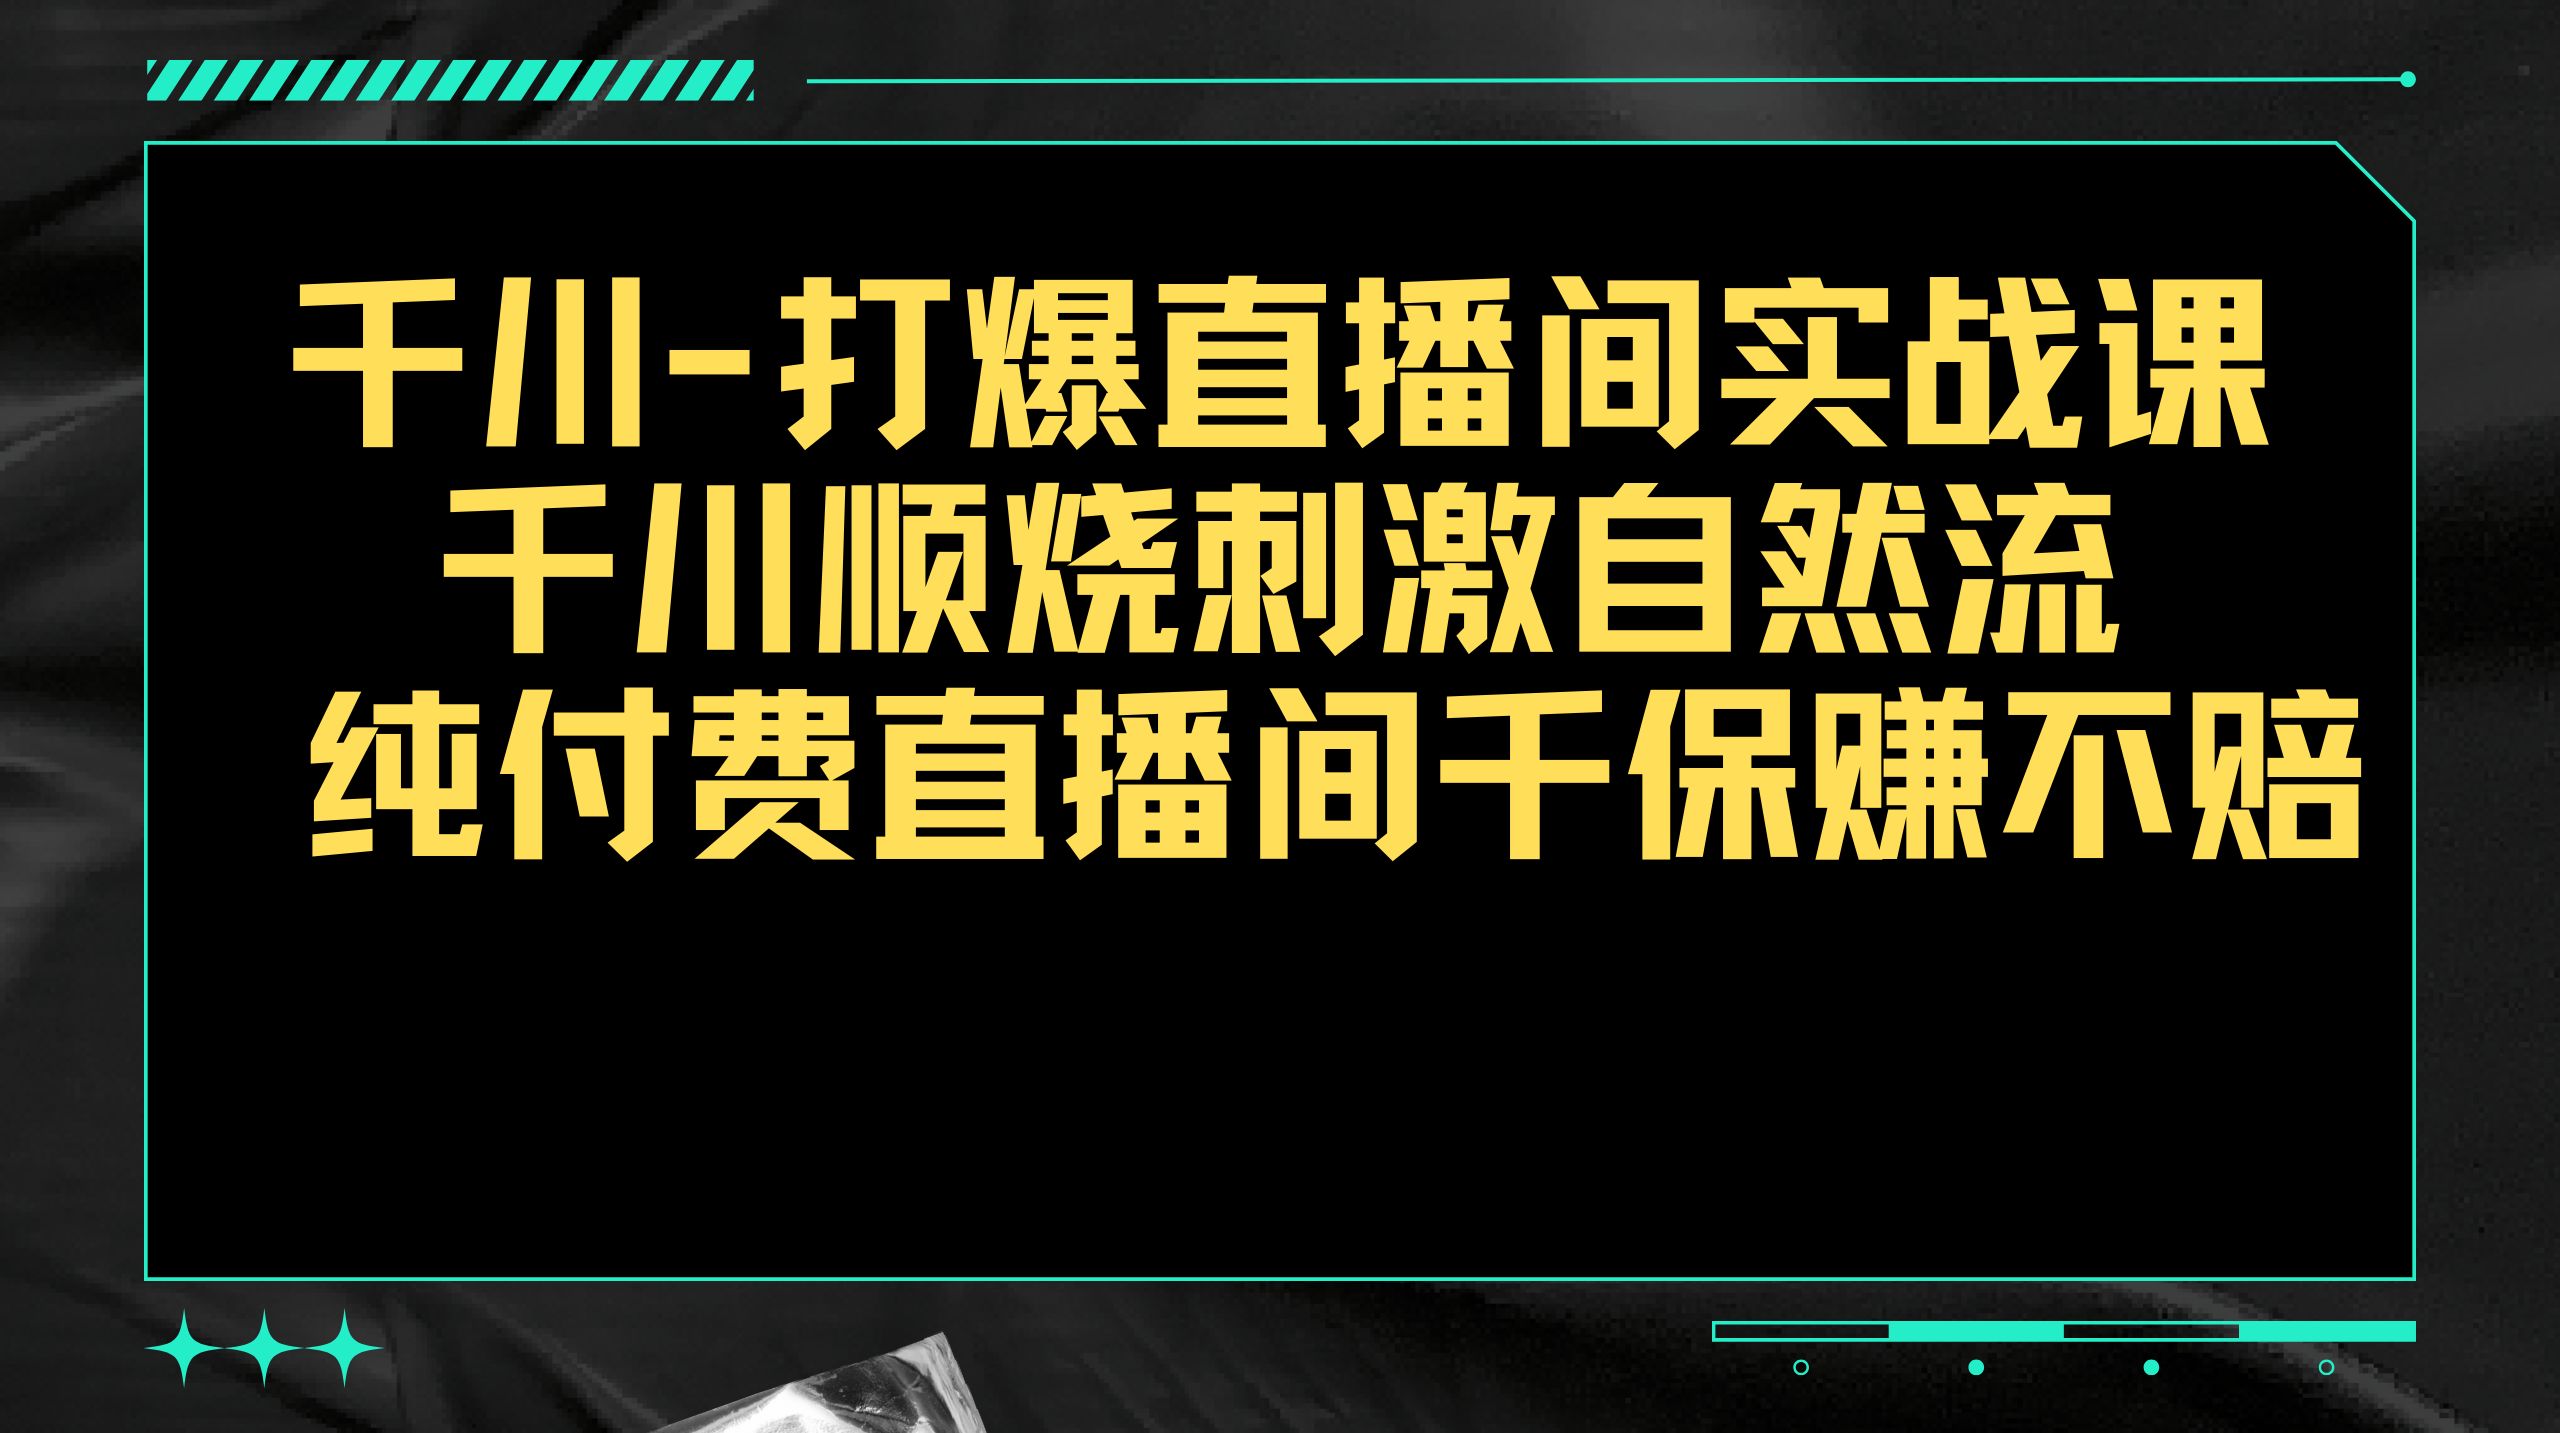 《我是带货王》实训实战营在深圳举行__凤凰网